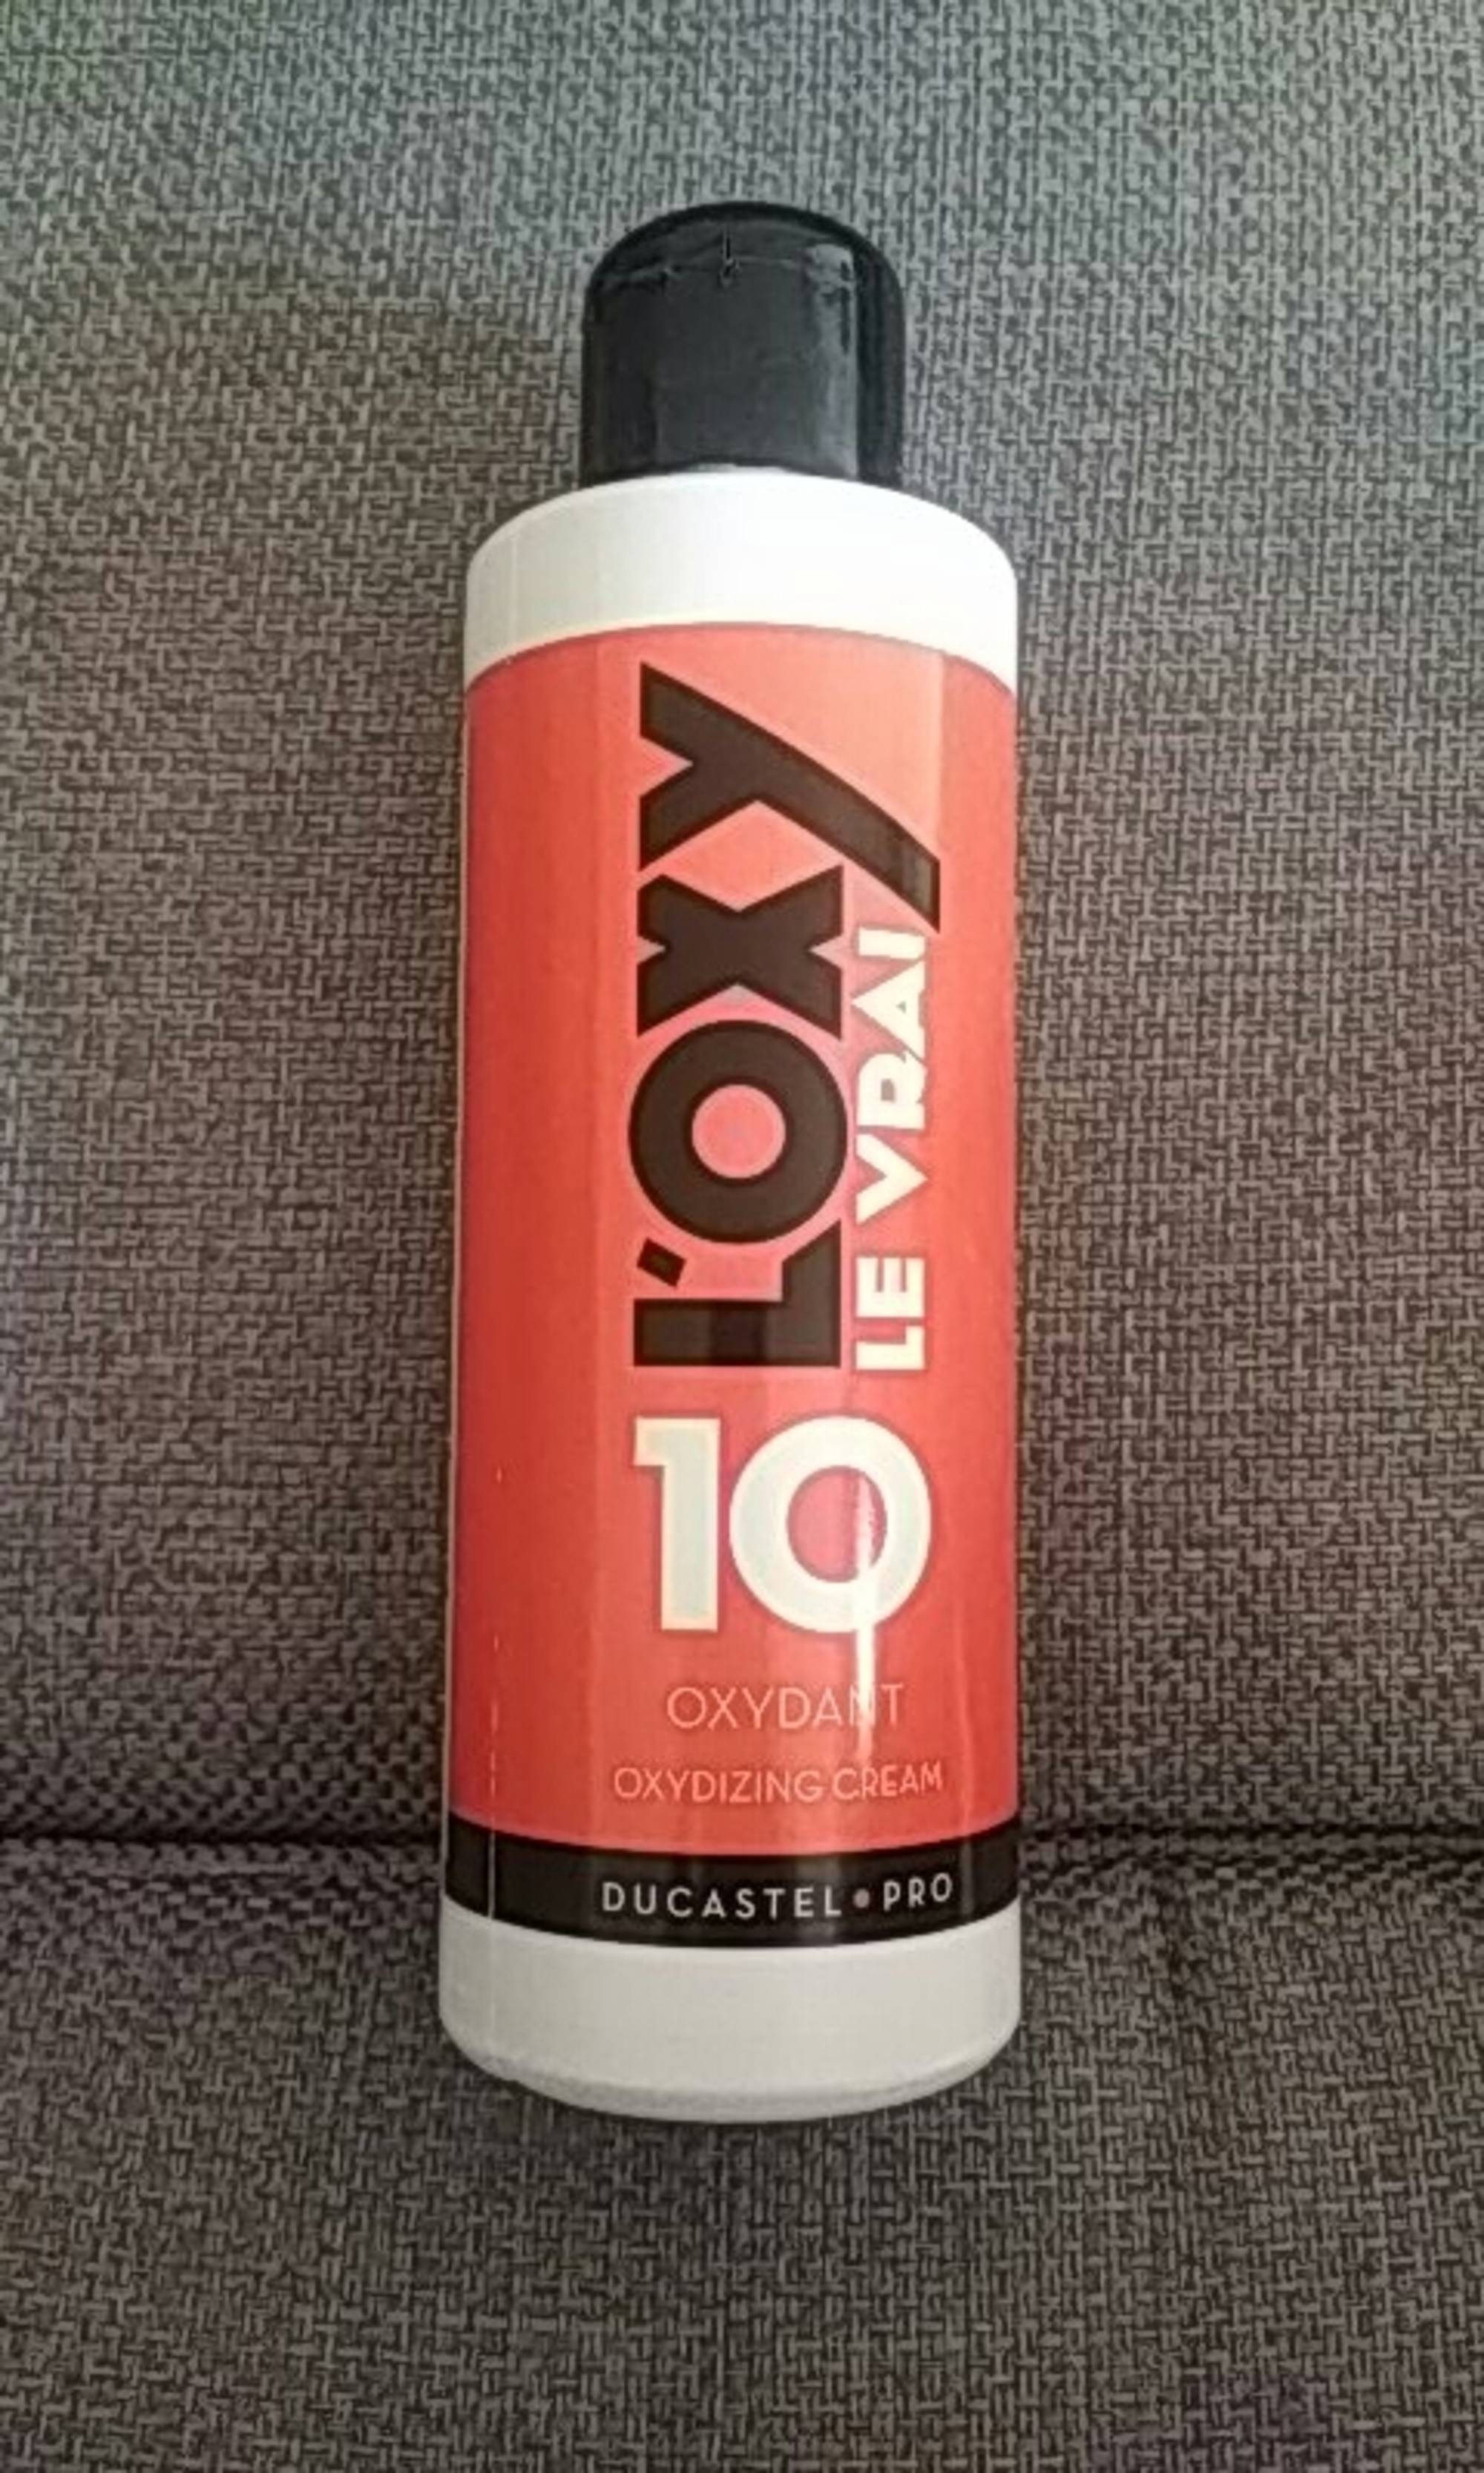 DUCASTEL - L'oxy le vrai 10 - Oxydizing cream